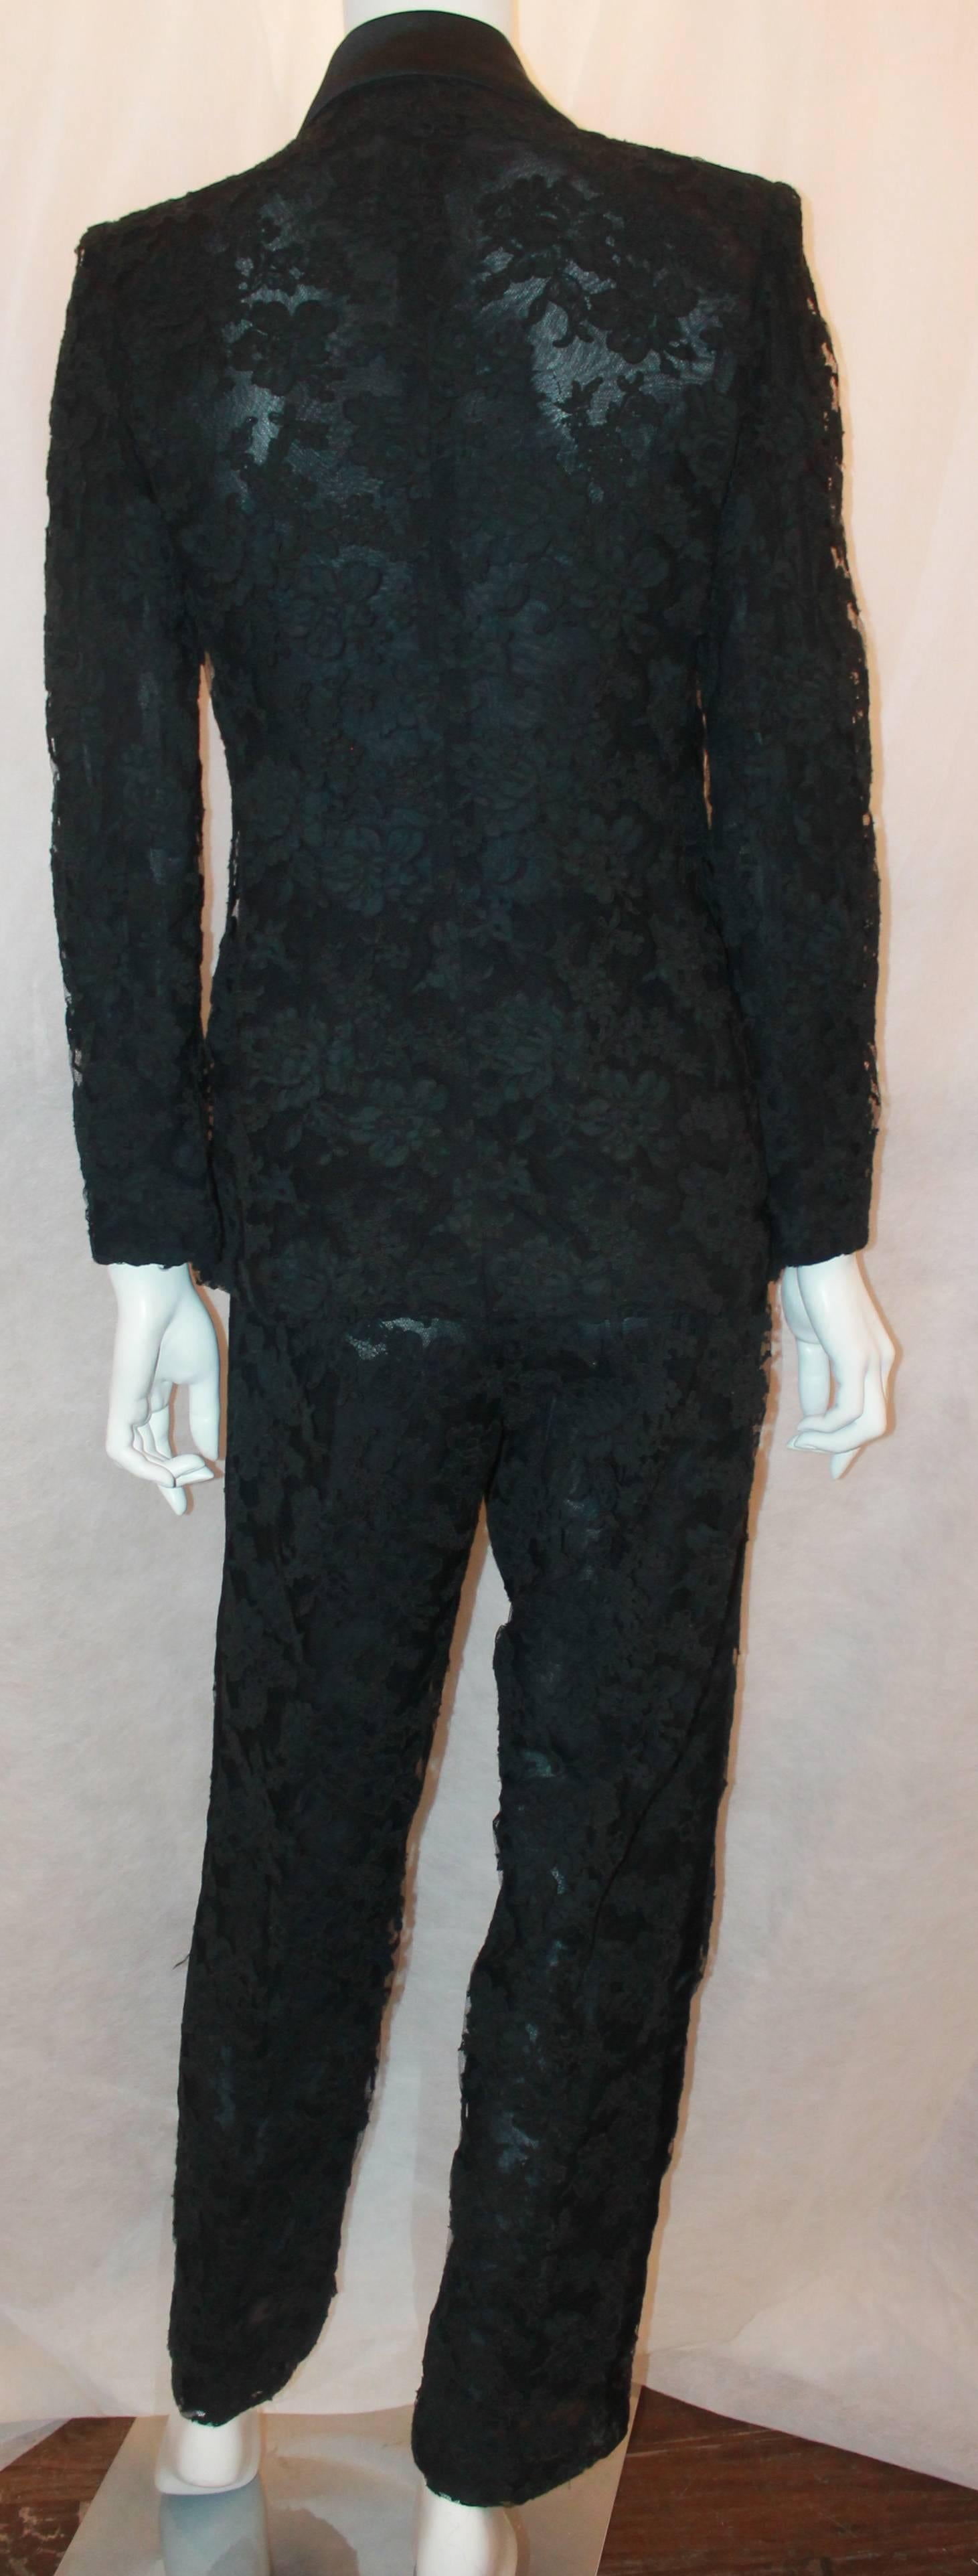 Women's Bill Blass Vintage Black Tuxedo Style Soutache Lace Pant Suit - 8 - Circa 1990's